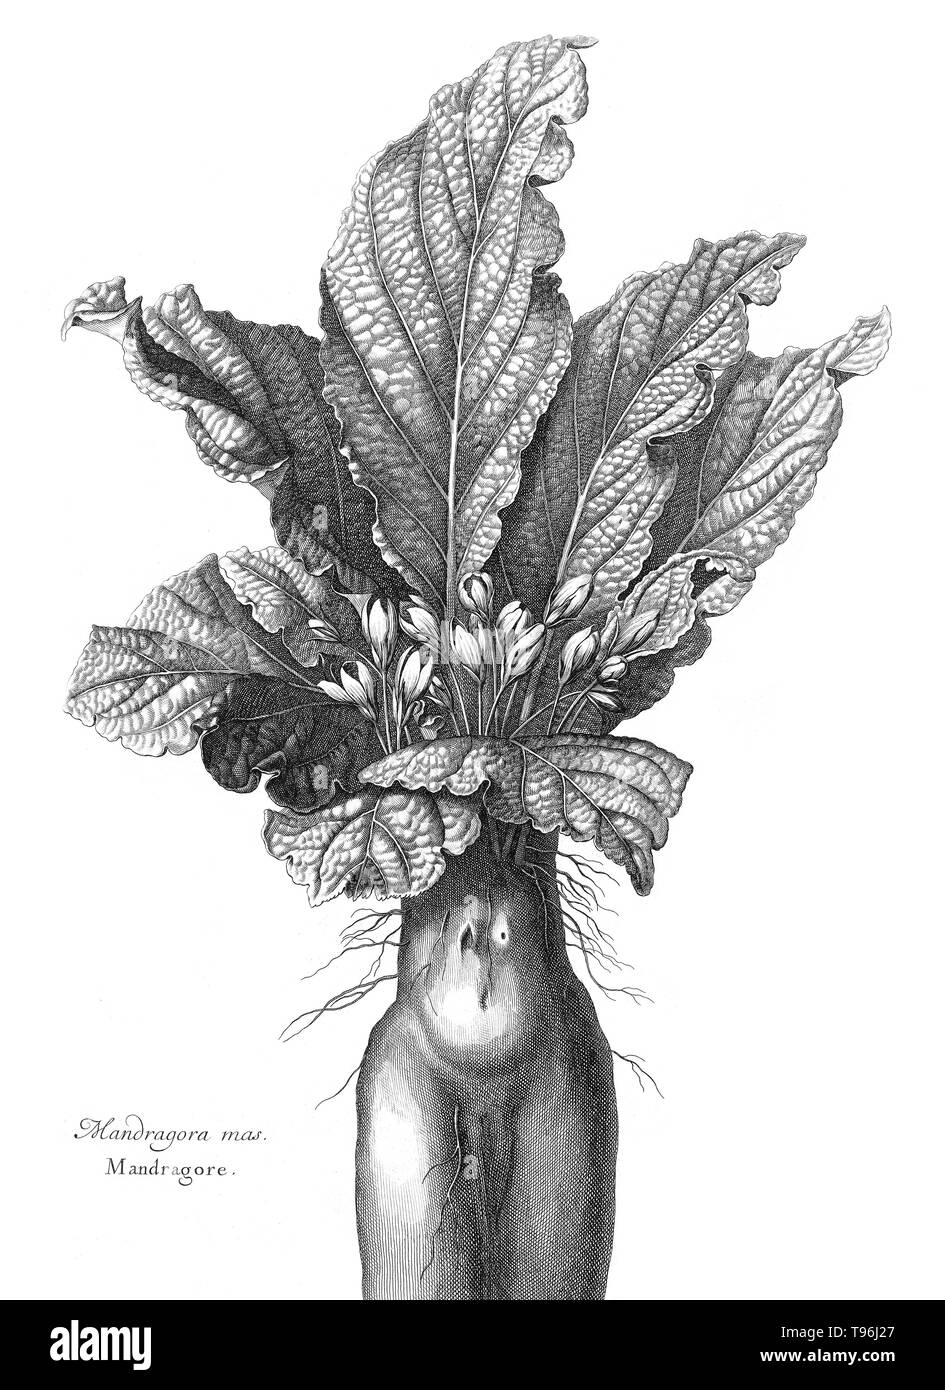 Représentant un Mandrake root humanoïde. Volume 2, Mémoires pour servir à l'histoire des plantes de Denis Dodart (1634 - 5 novembre 1707) un médecin français, naturaliste et botaniste. Mandrake est le nom commun pour les membres de l'espèce, en particulier l'espèce Mandragora Mandragora officinarum, appartenant à la famille nightshades (Solanaceae). Les racines ressemblent parfois à des figures humaines et leurs racines ont longtemps été utilisés dans les rituels de magie. Banque D'Images